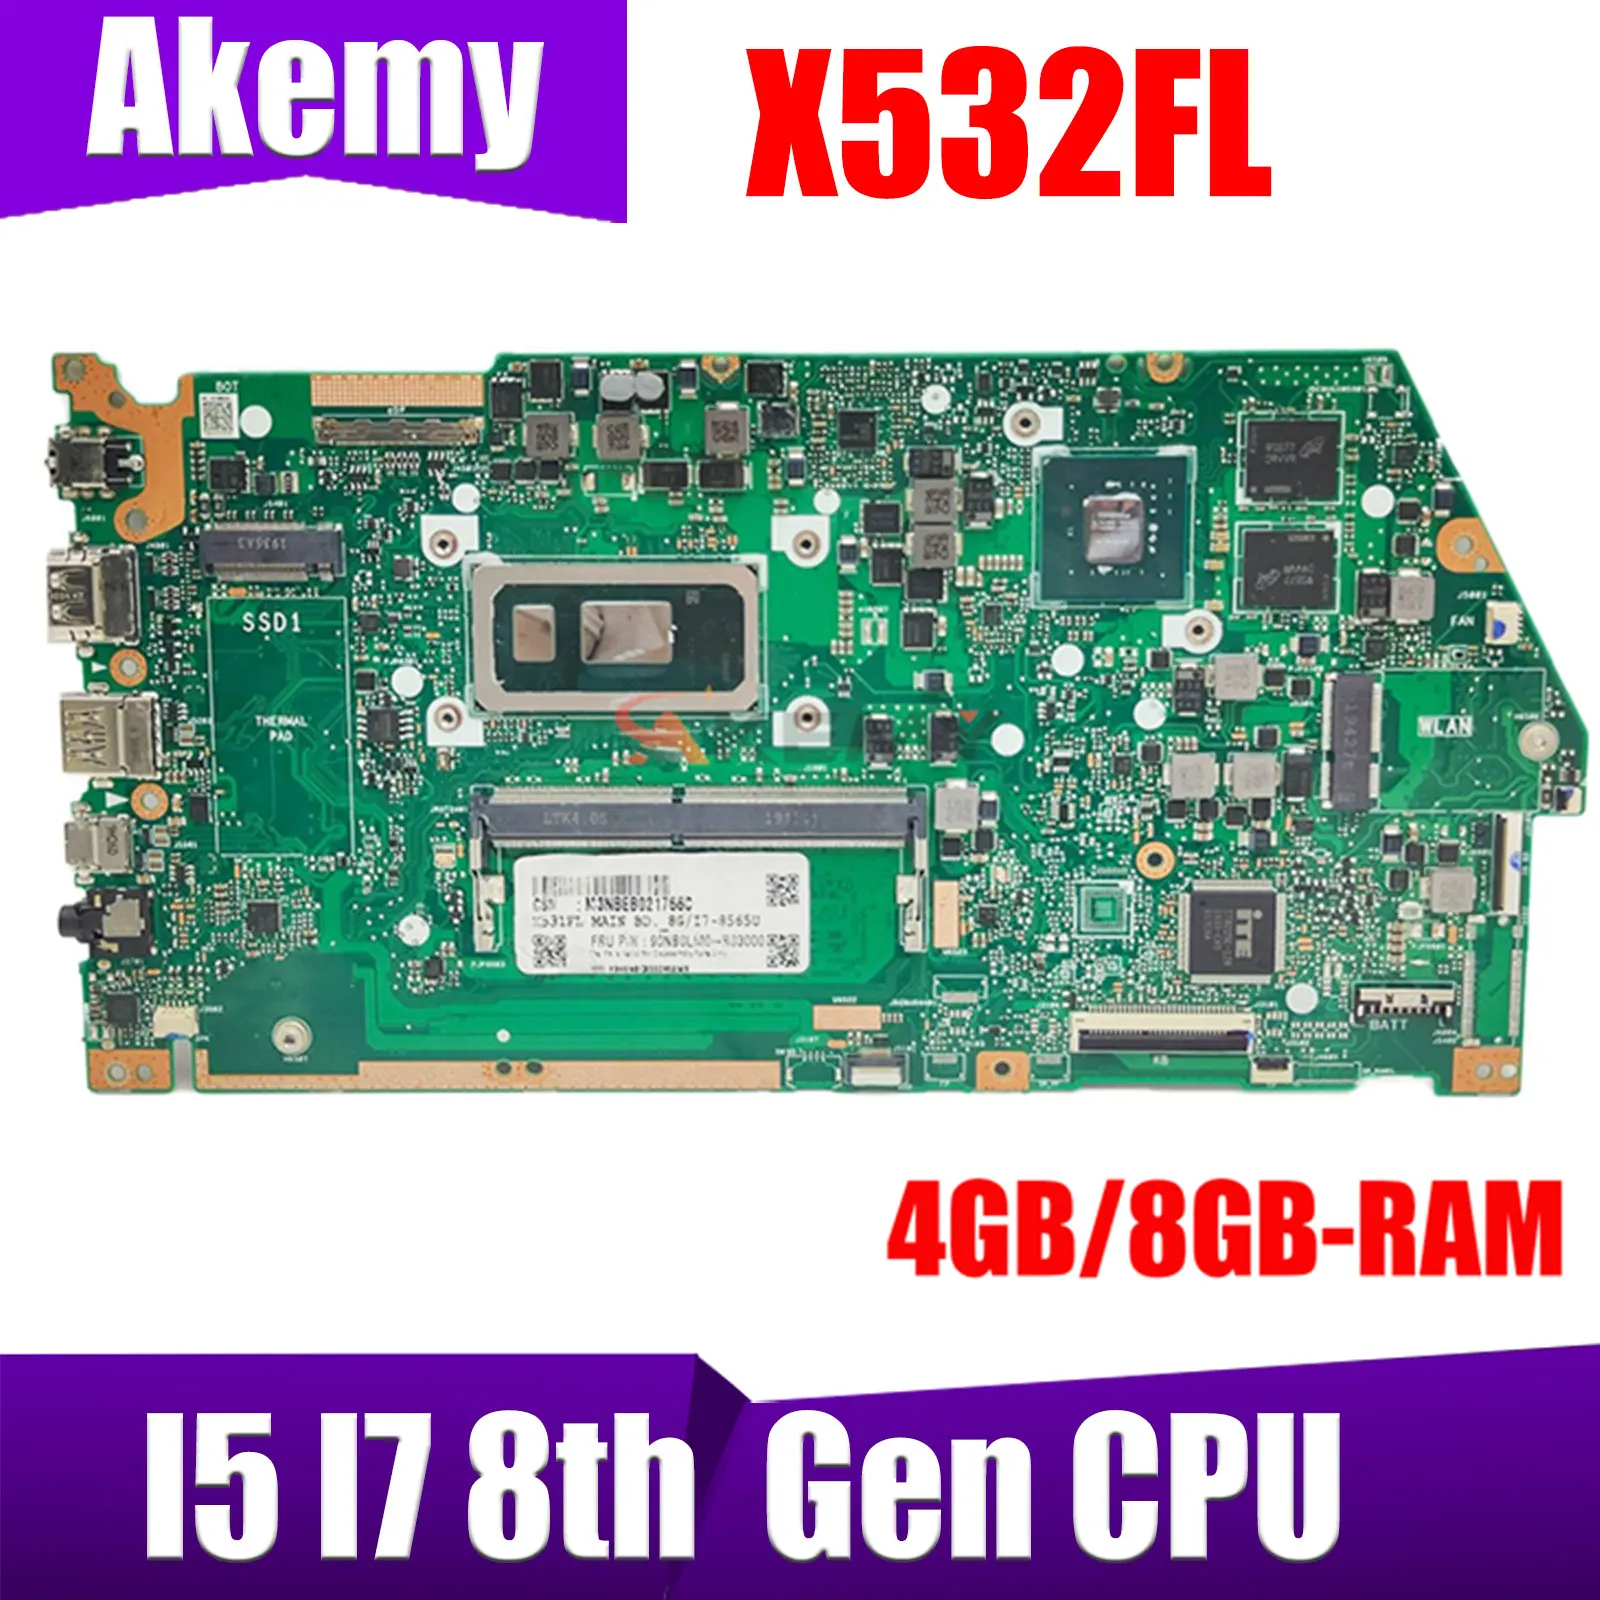 

Материнская плата X532FL с I5 I7-8th 4 ГБ/8GB-RAM для ASUS VivoBook S15 S532 X531FA S532FL X532FA Материнская плата ноутбука 100% ТЕСТ ОК